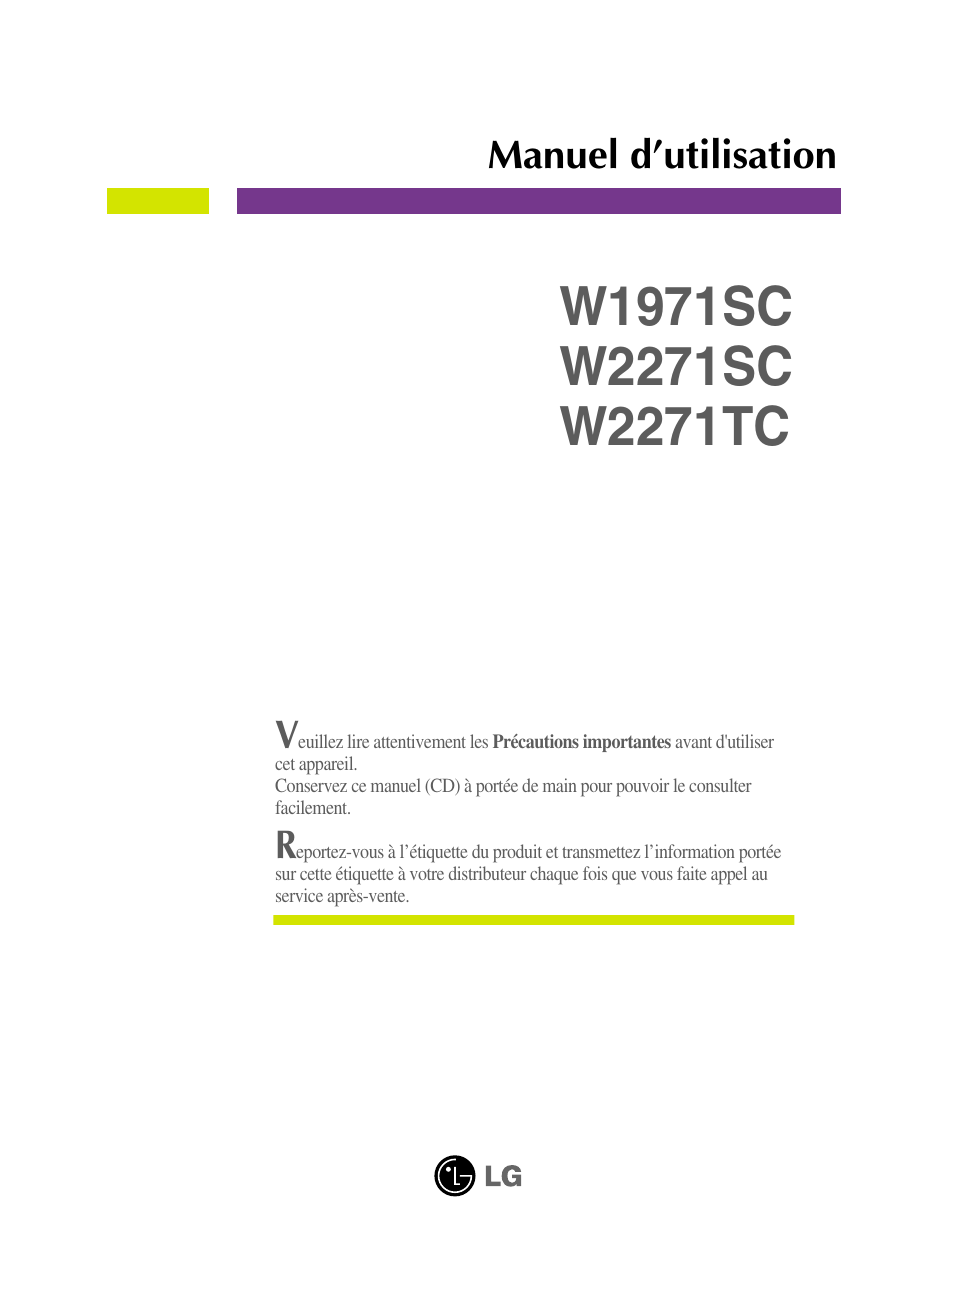 LG W2271TC-PF Manuel d'utilisation | Pages: 34